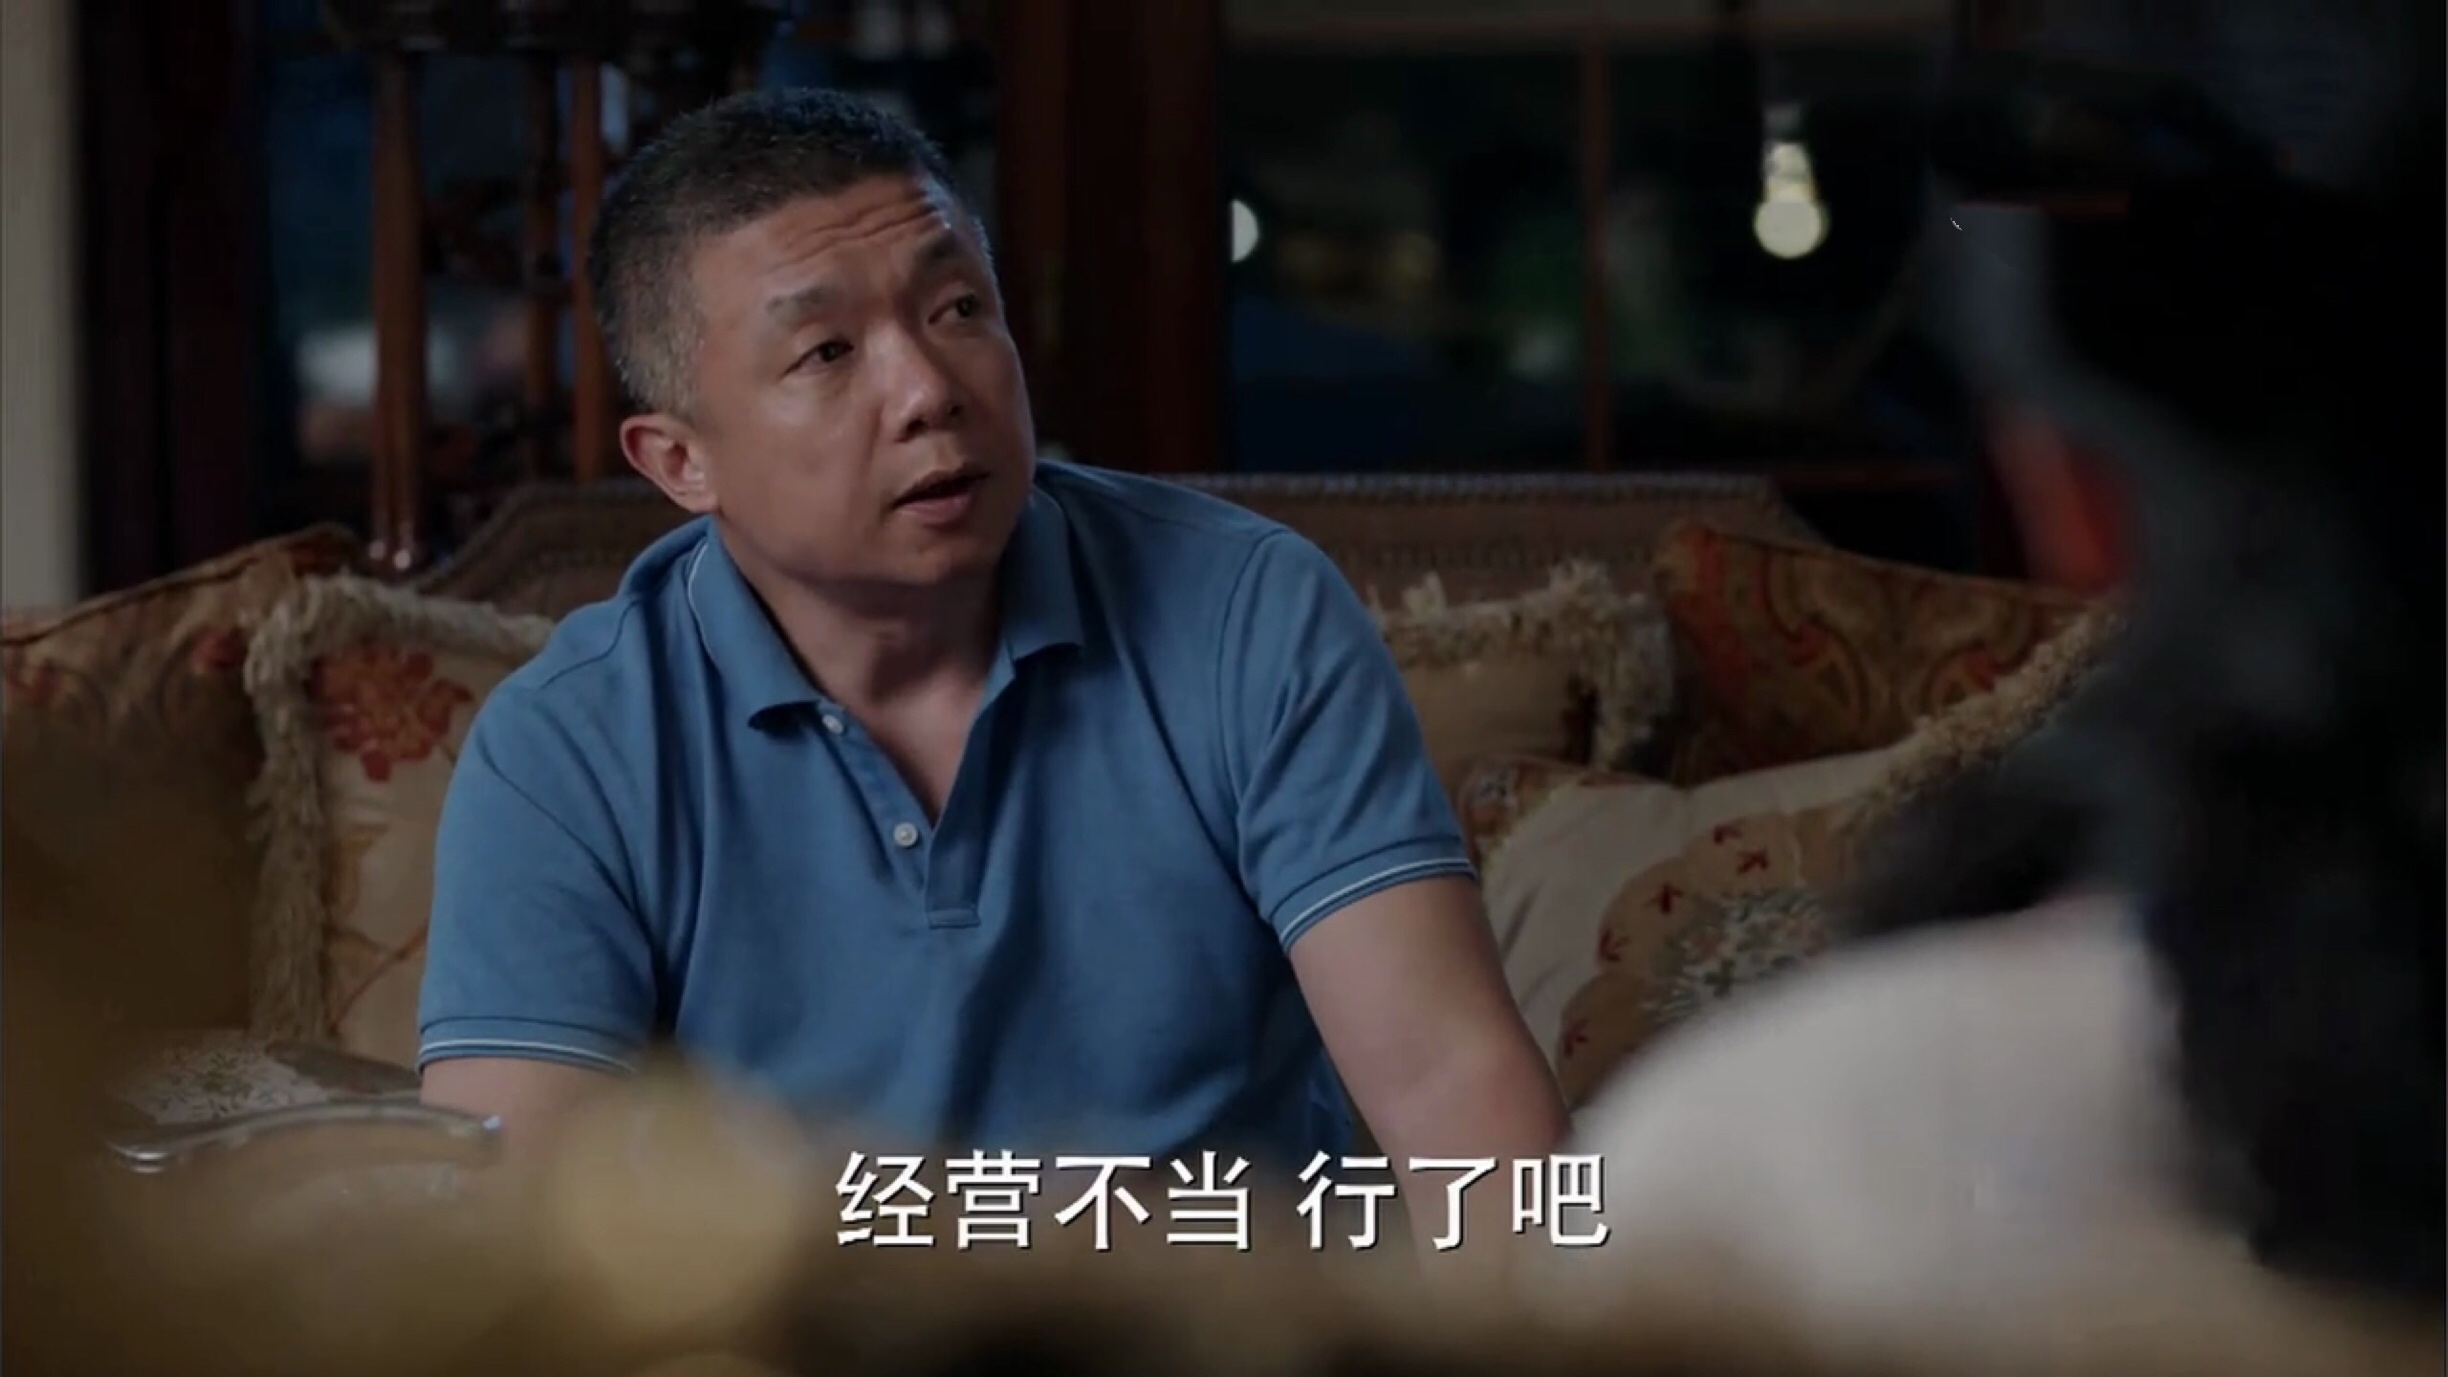 少年派:江天昊家虽然破产了,但是他的父母三观很正,值得点赞